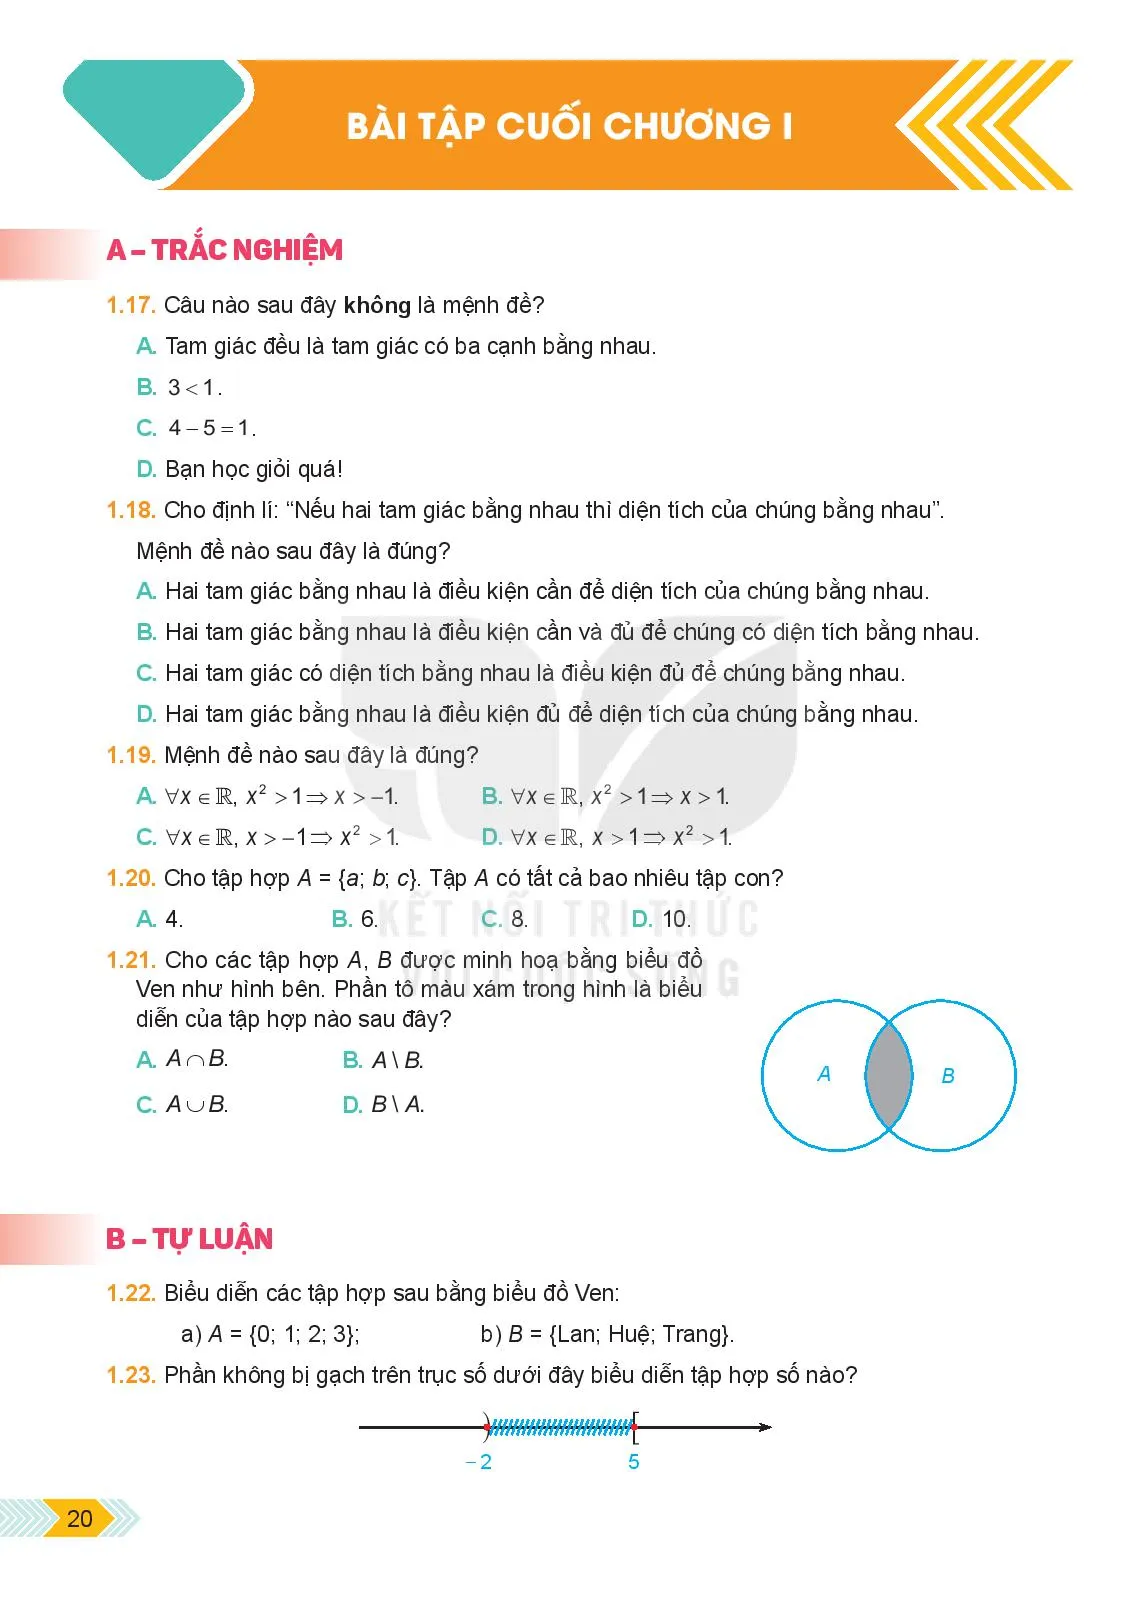 Bài 2. Tập hợp và các phép toán trên tập hợp